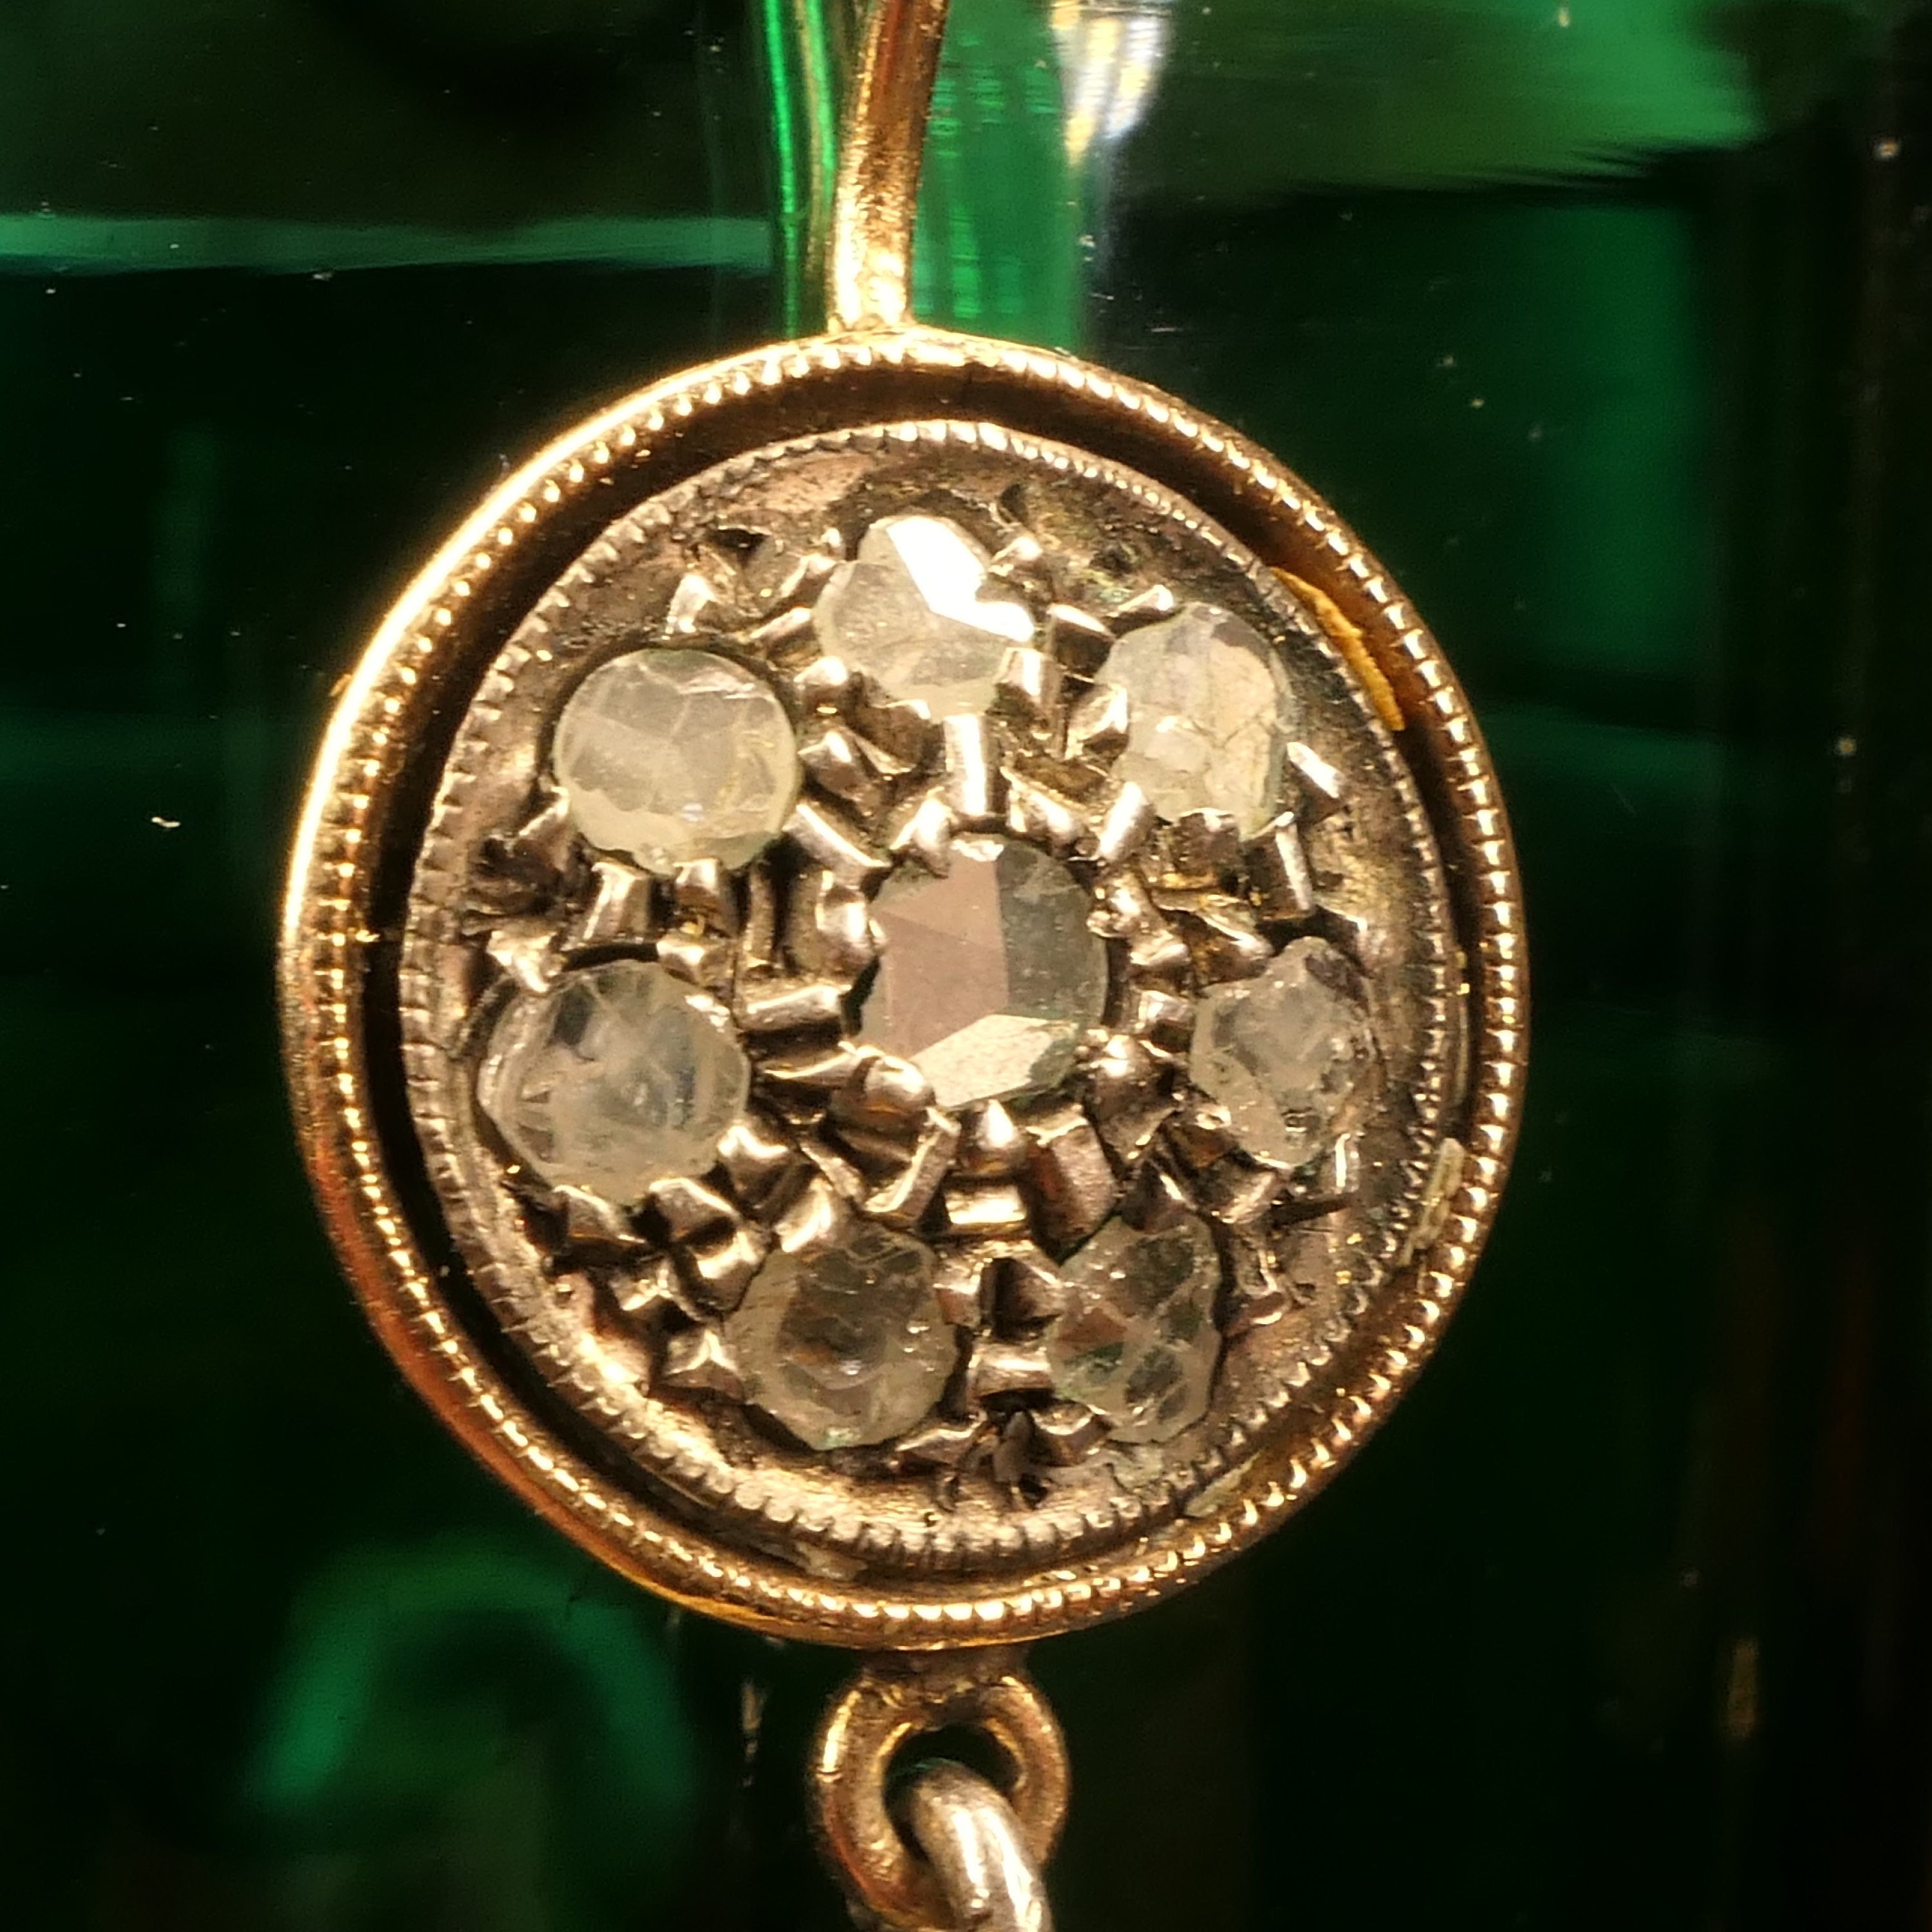 Victorian, Rose Cut Diamond, Peridot, 9ct Gold & Silver Drop Earrings